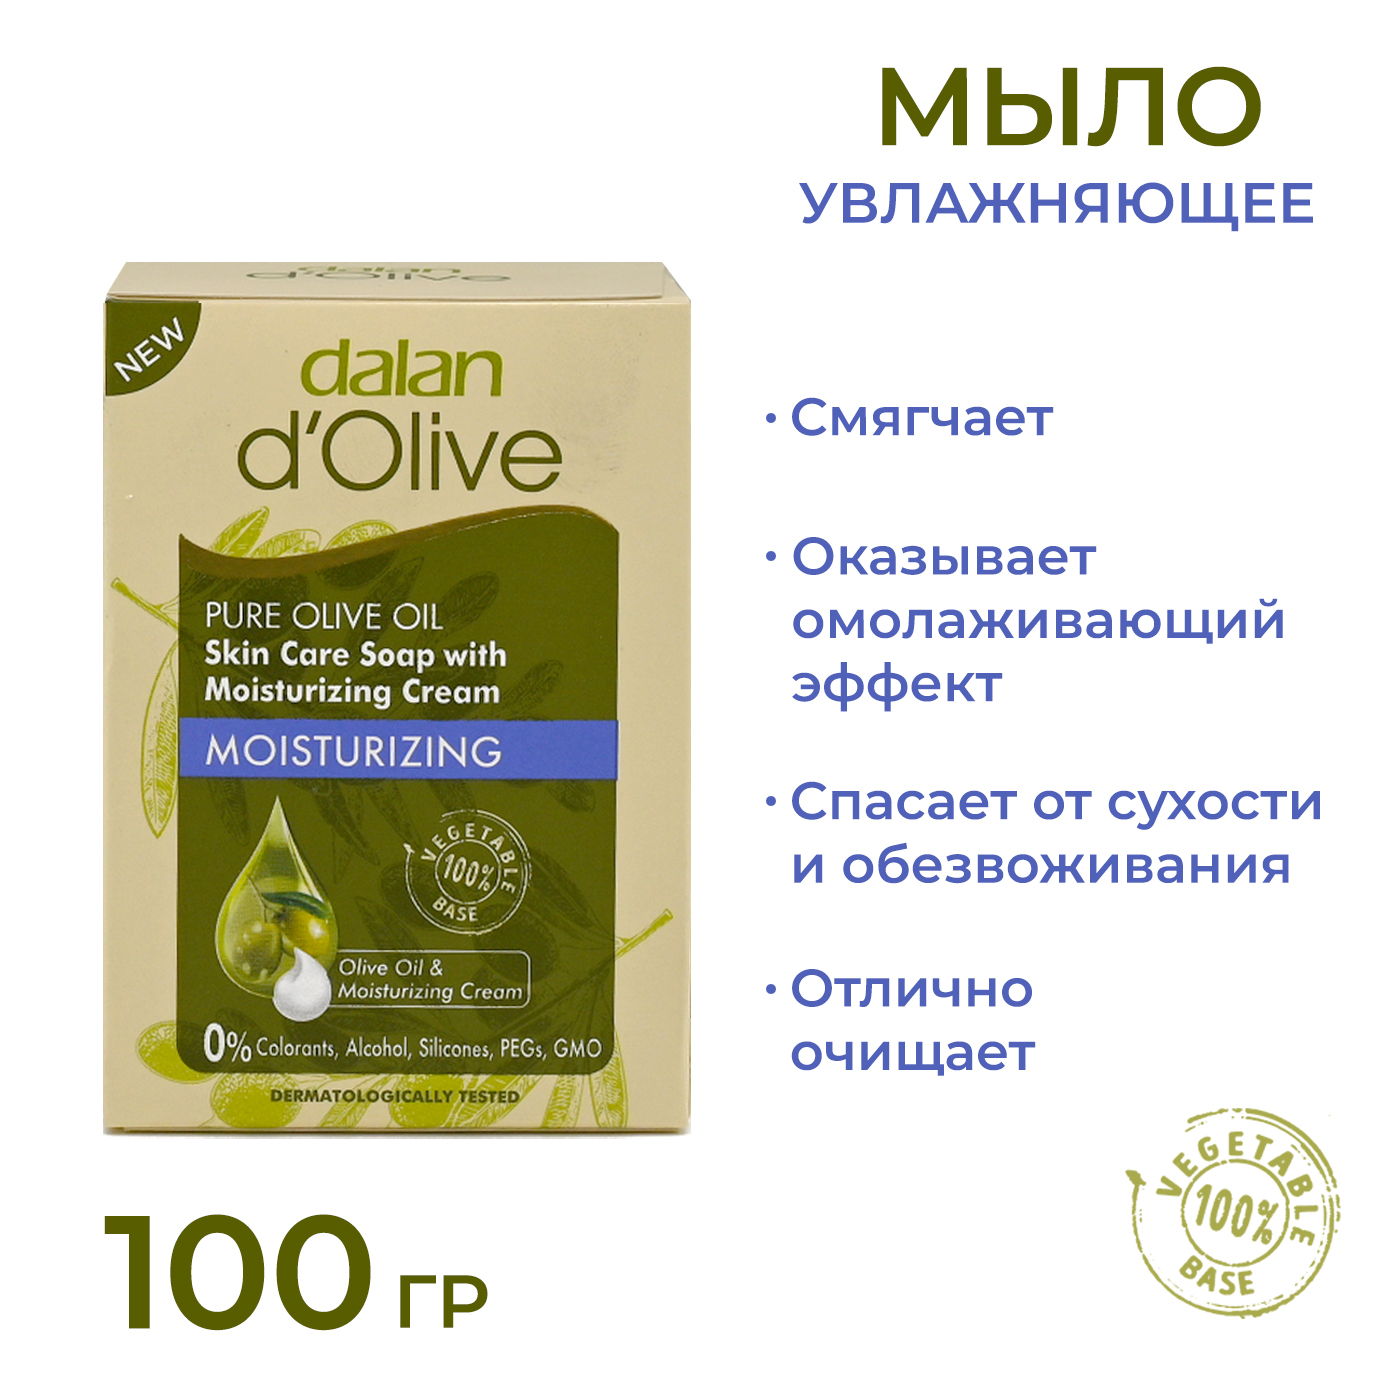 Мыло кусковое Dalan d'Olive Увлажняющее с кремом, 100 г мыло балет с питательным кремом 100 г